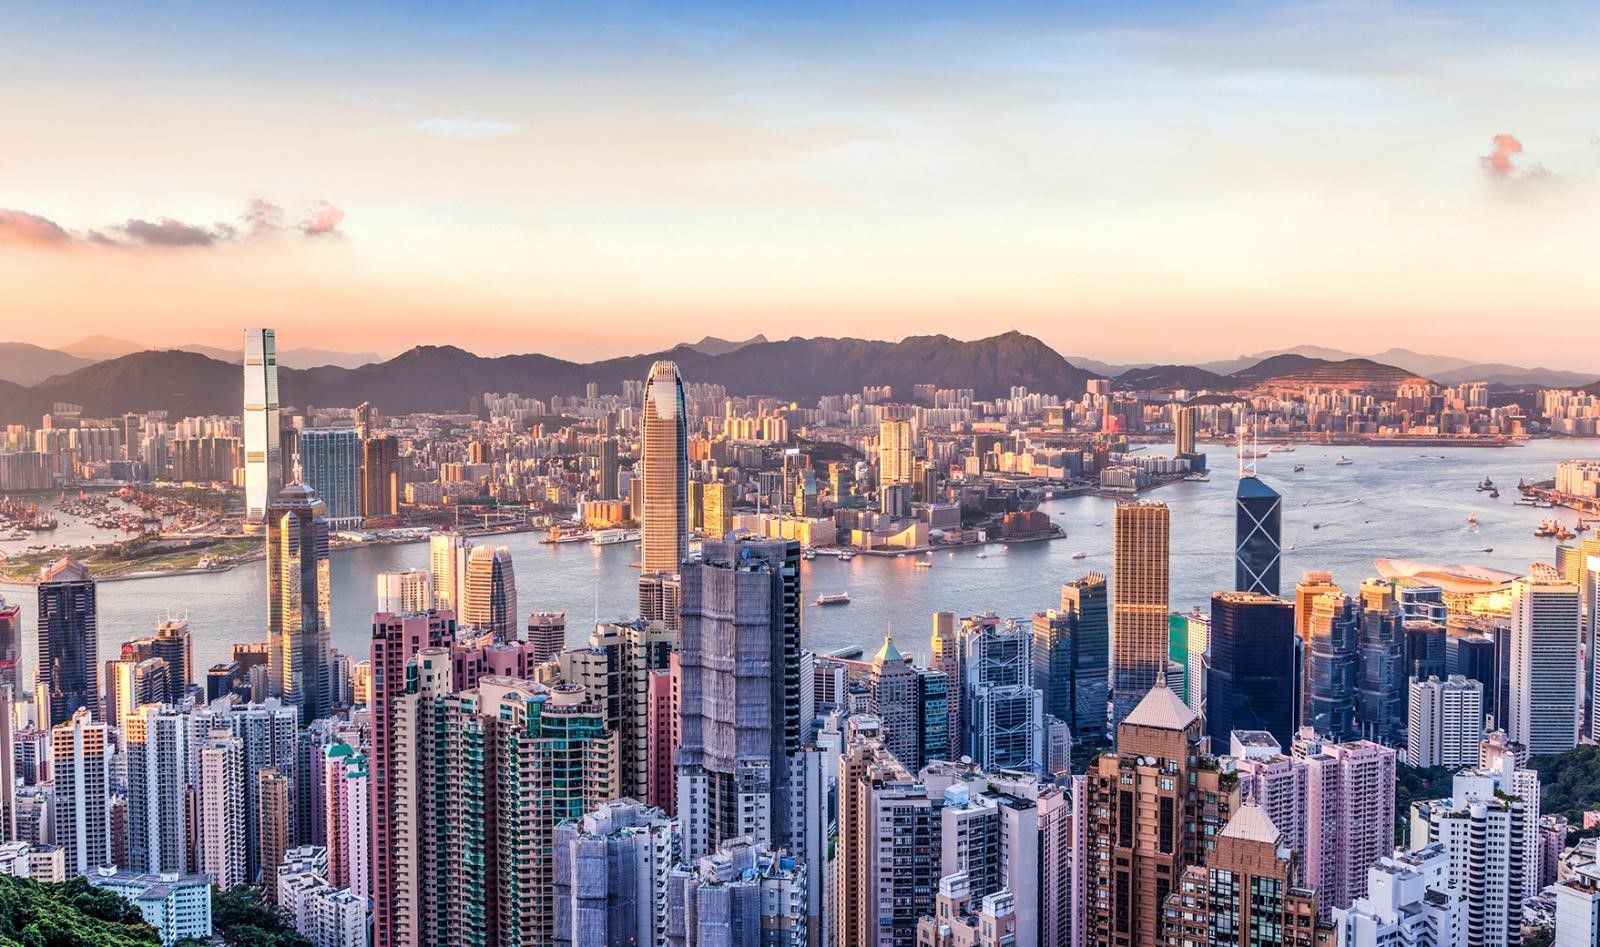 HONG KONG & CHINESE INVESTORS EYE DUBAI'S JUMEIRAH GOLF ESTATES AT UPCOMING PROPERTY SHOW